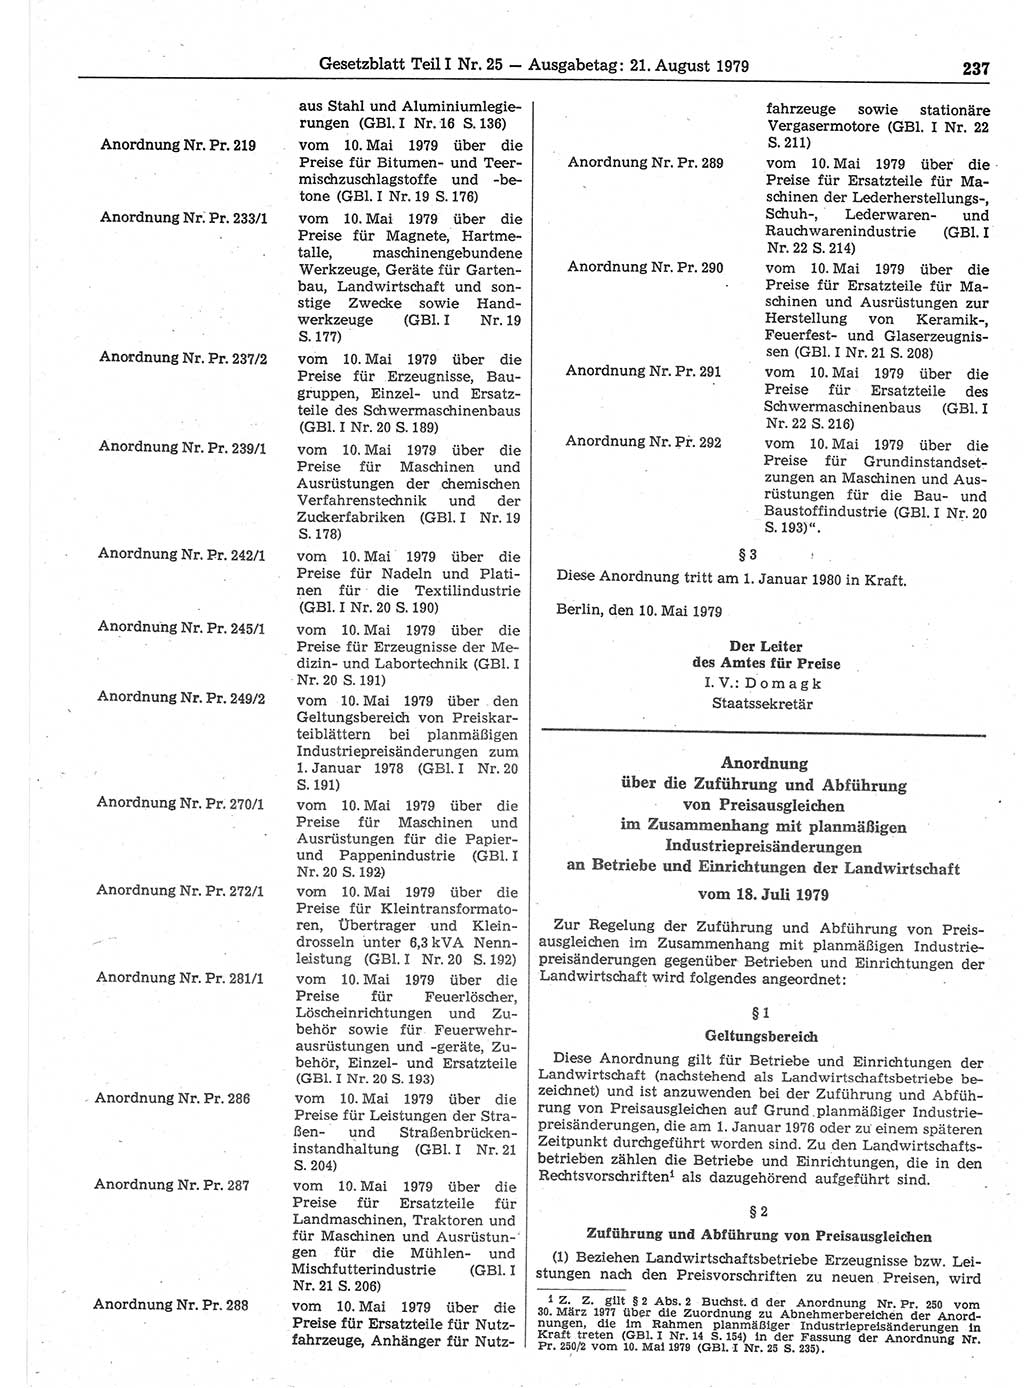 Gesetzblatt (GBl.) der Deutschen Demokratischen Republik (DDR) Teil Ⅰ 1979, Seite 237 (GBl. DDR Ⅰ 1979, S. 237)